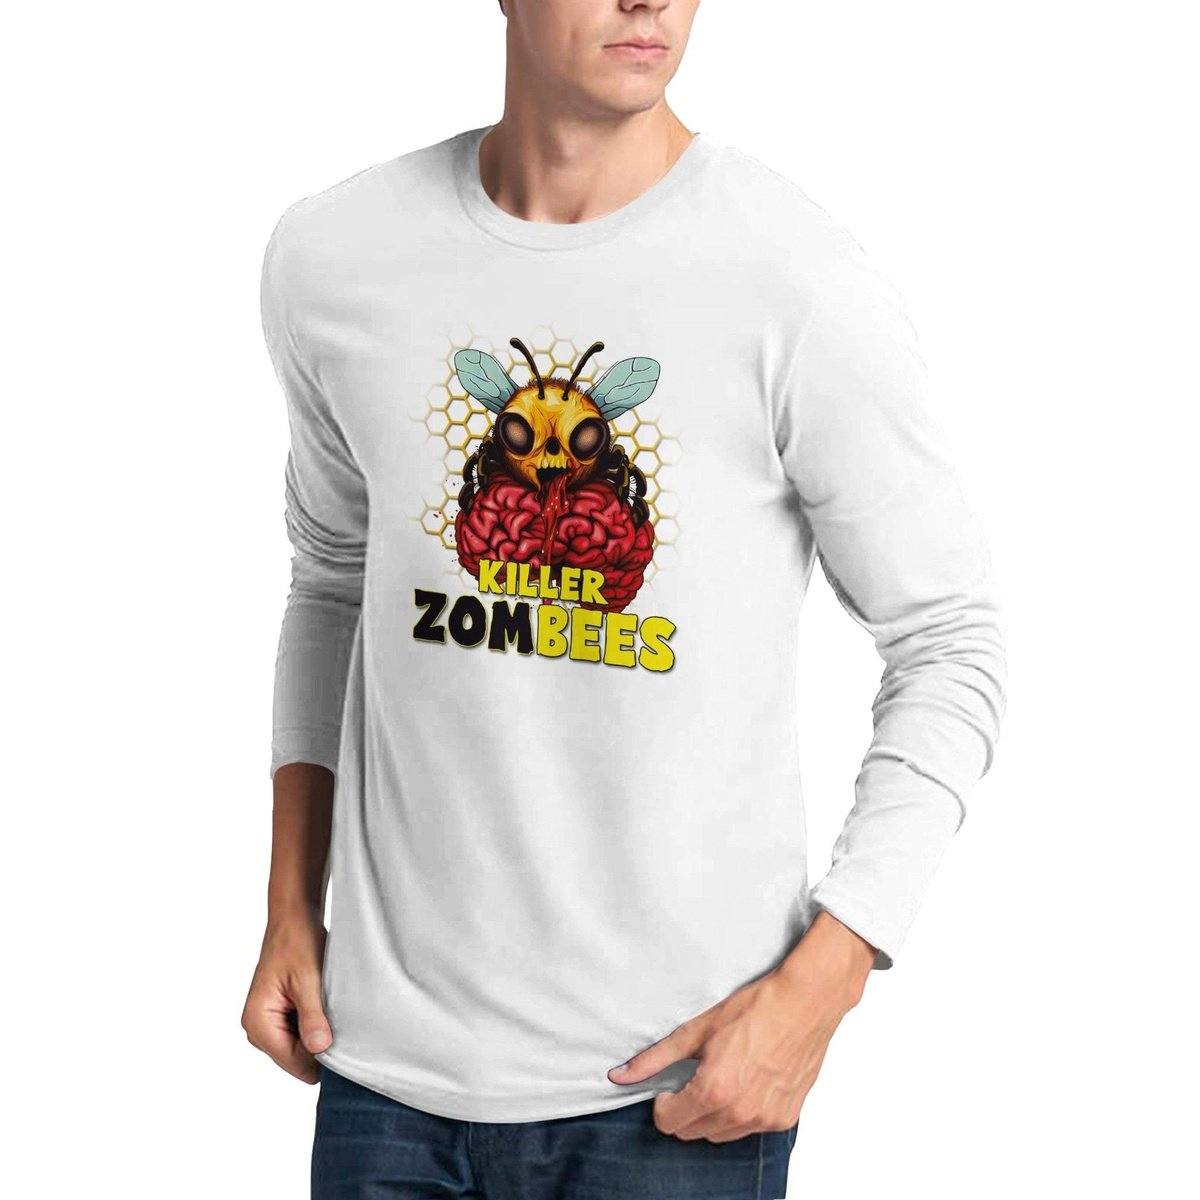 Killer Zombees - Premium Unisex Longsleeve T-shirt Australia Online Color White / S